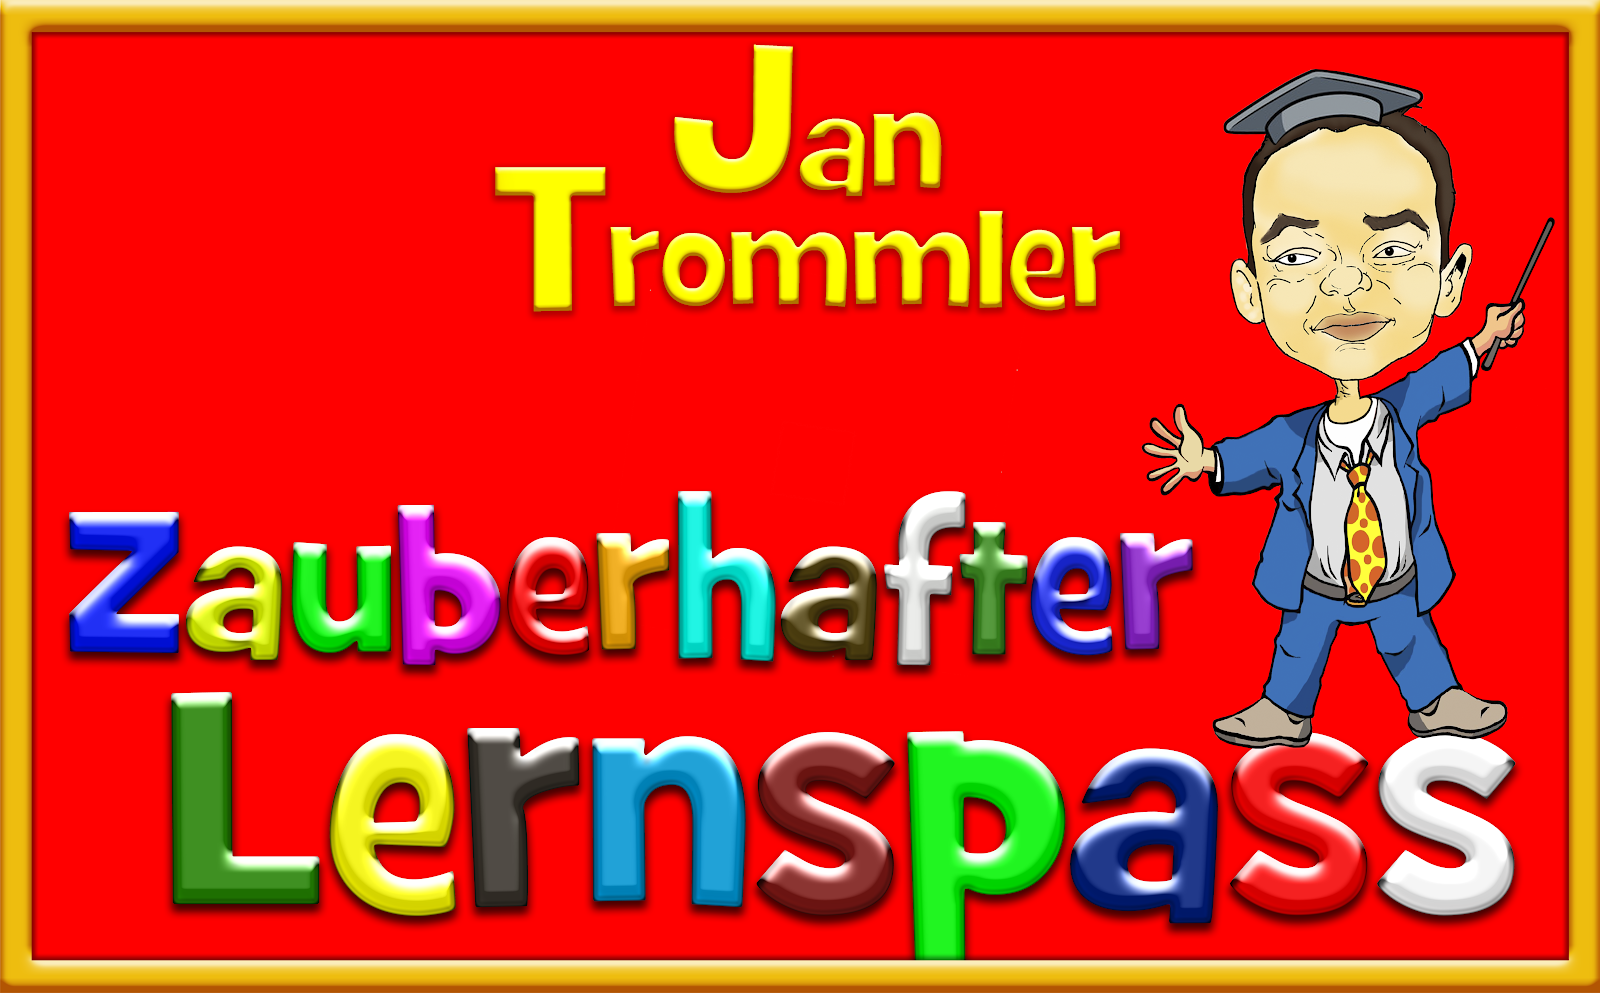 Verkehrszauberer Jan Trommler